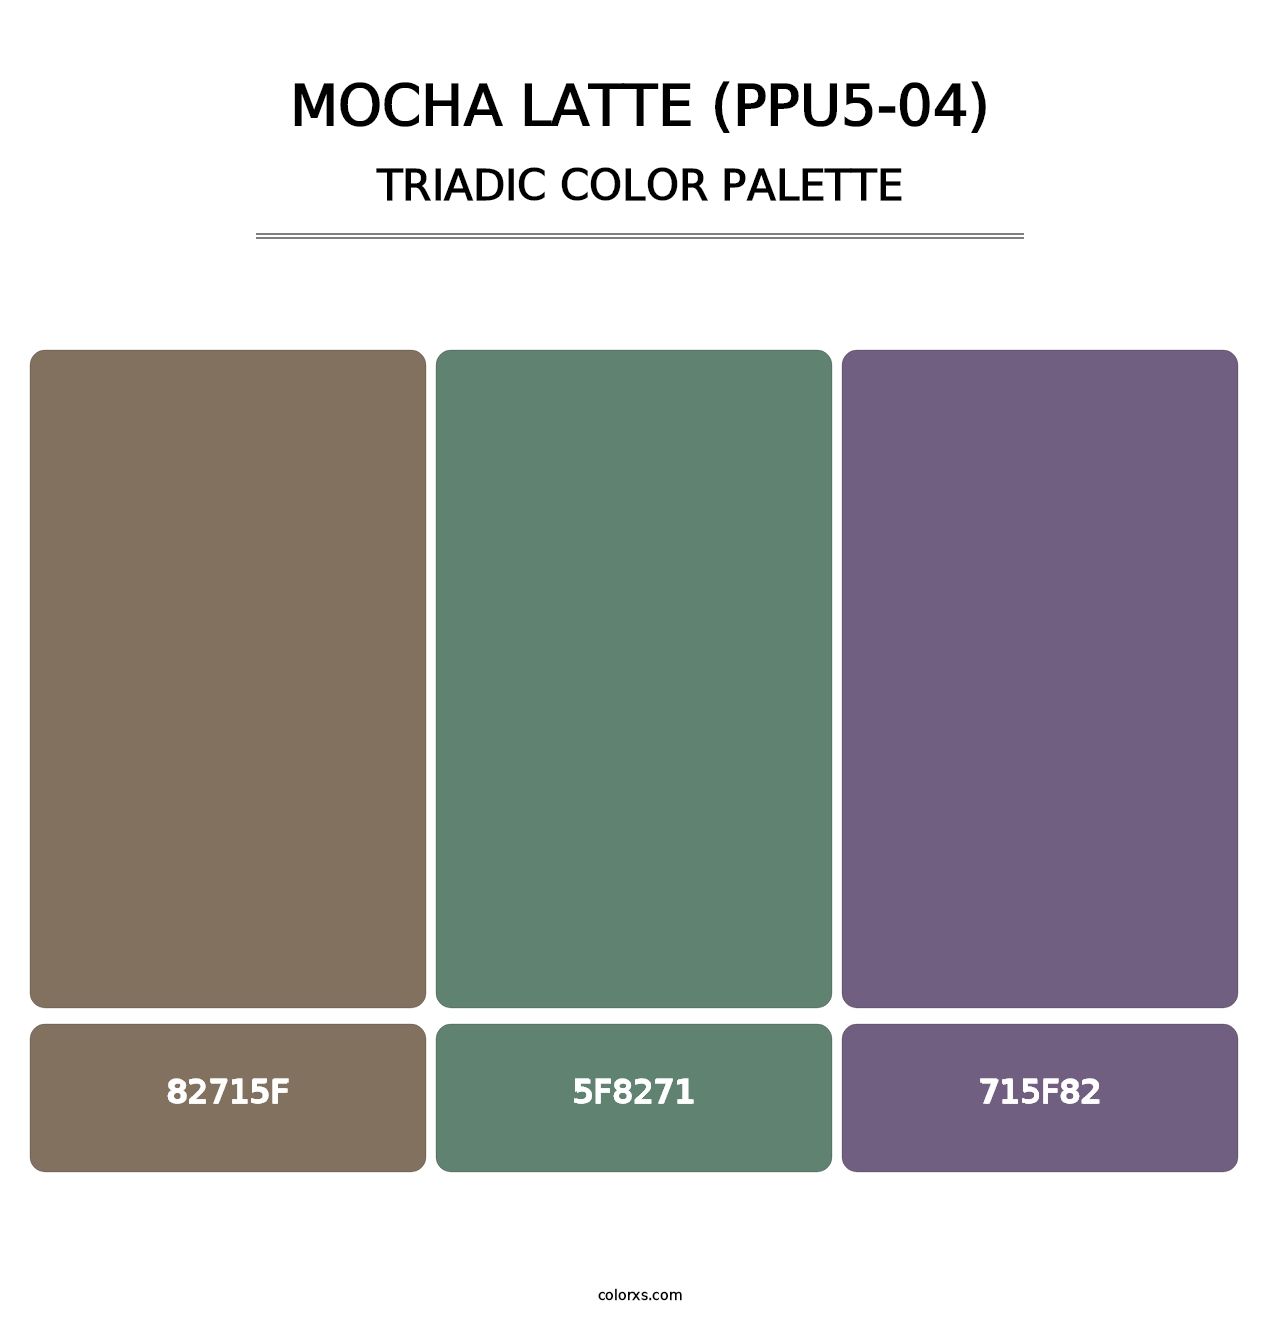 Mocha Latte (PPU5-04) - Triadic Color Palette